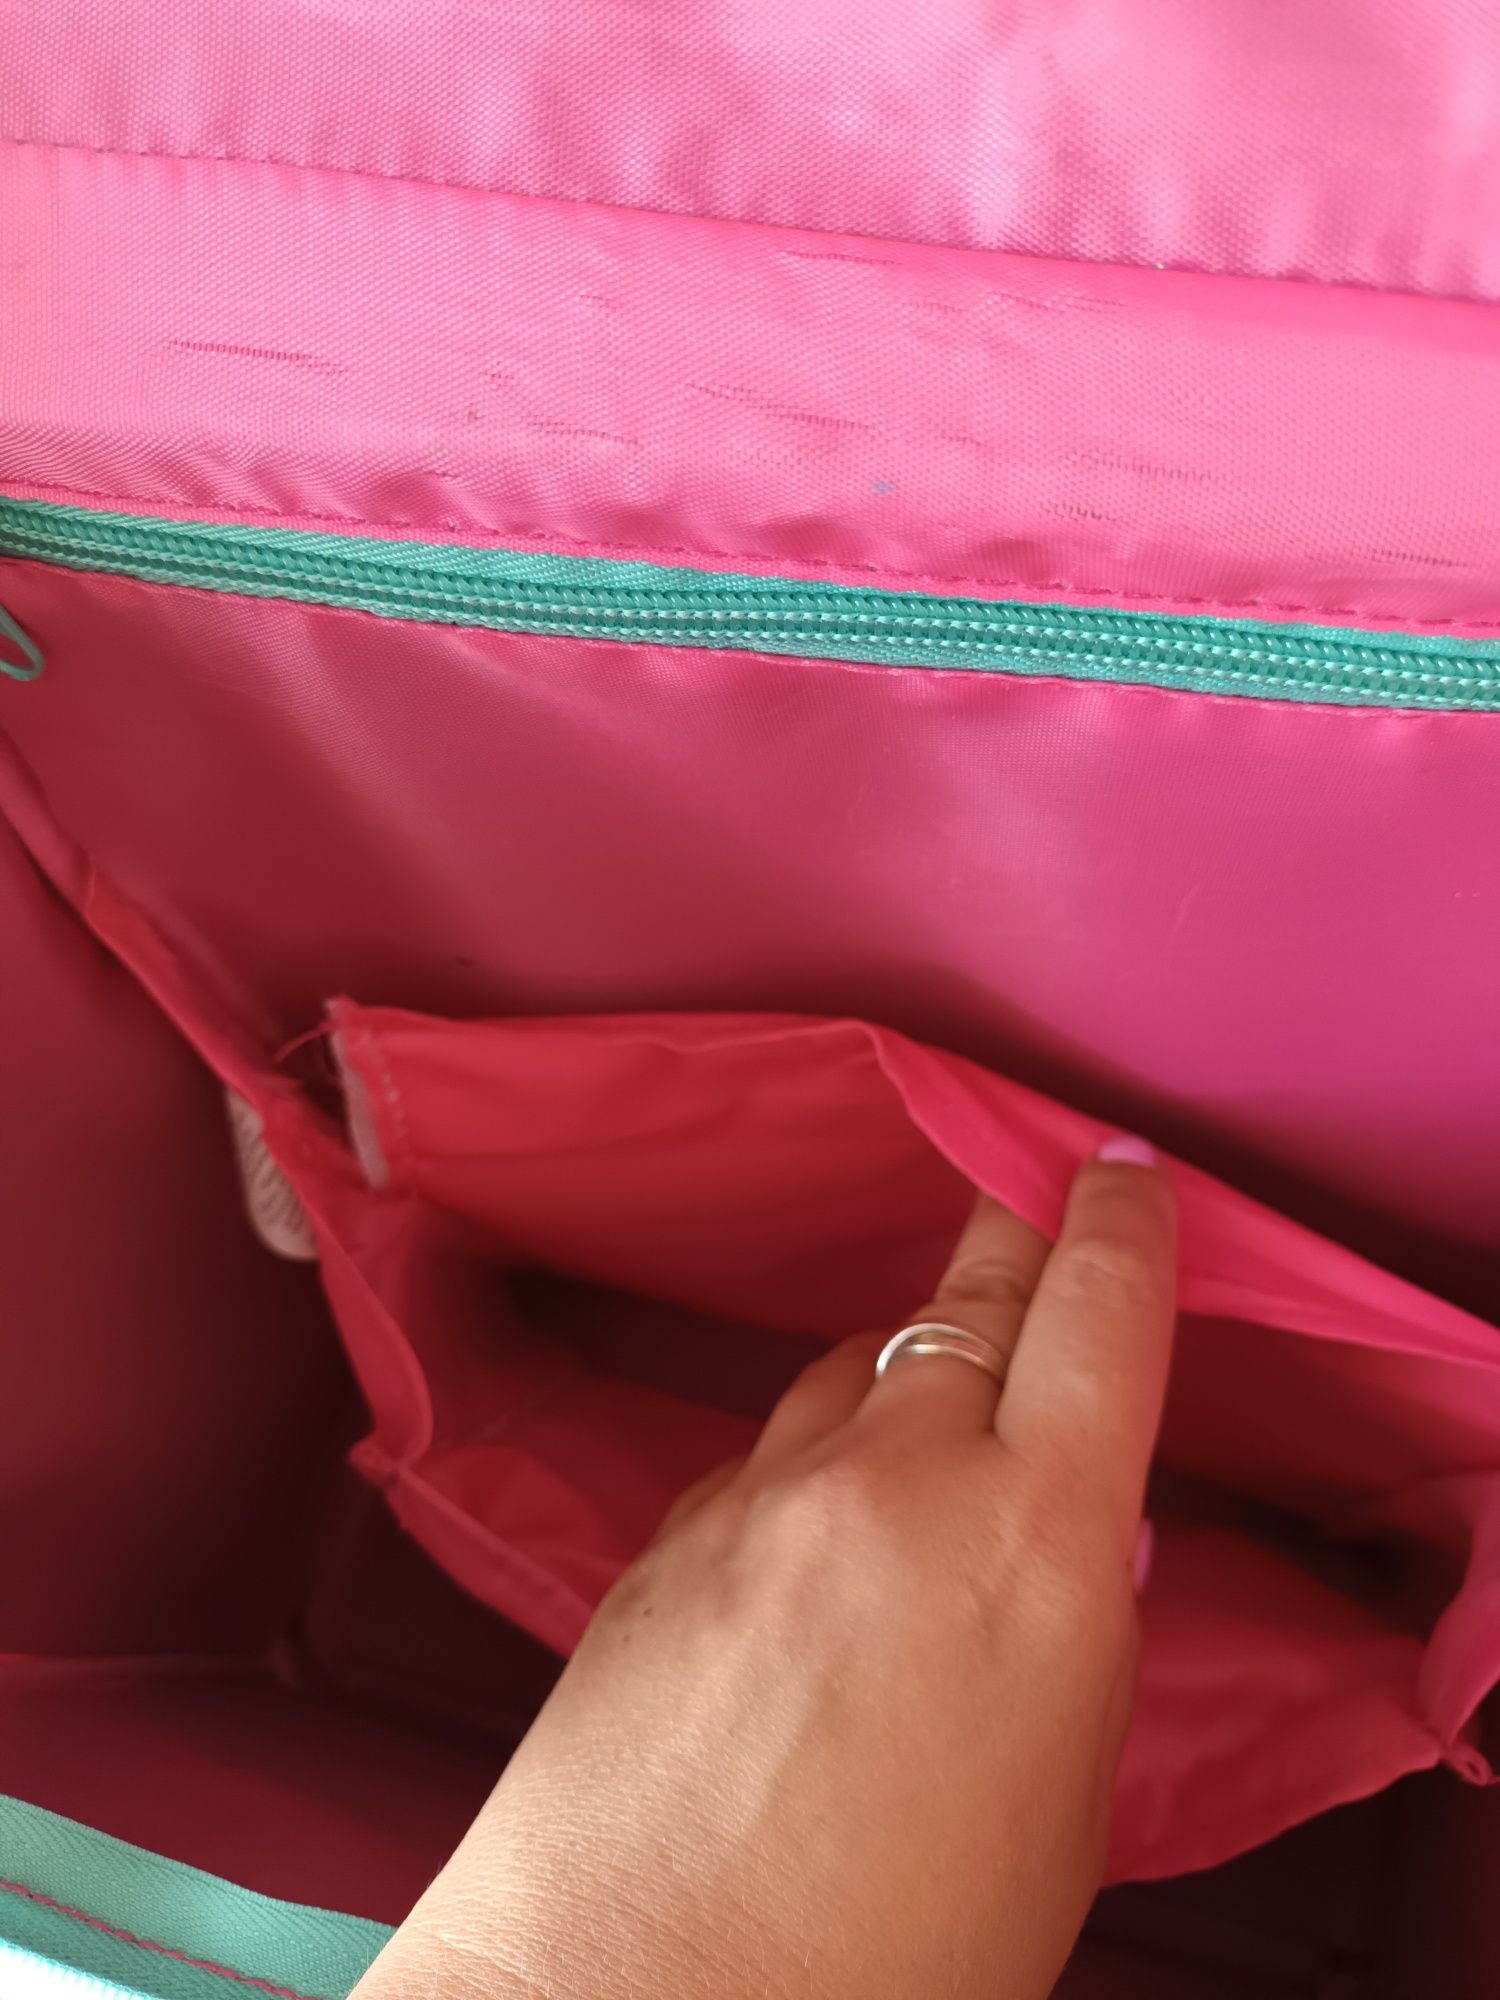 Tornister plecak usztywniany 1 klasa szkolny różowy syrenka tanio